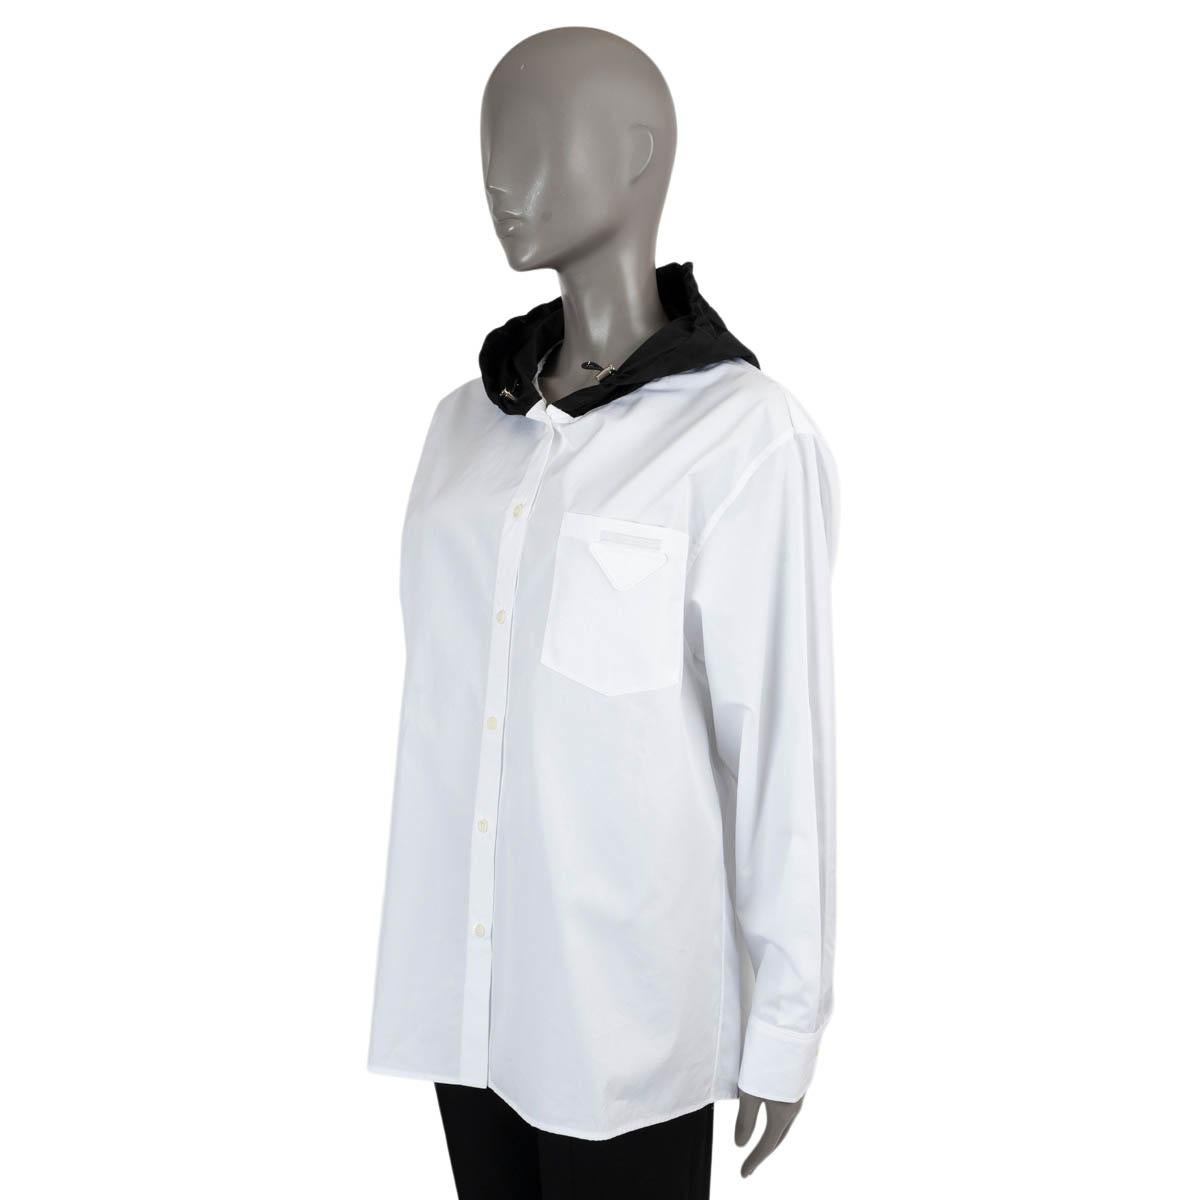 Chemise boutonnée en coton blanc (100%) authentique de Prada. Label : capuche noire en re-nylon, poche poitrine avec patch triangle et étiquette logo. A été porté et est en excellent état. 

2022 Pré-automne

Mesures
Taille de